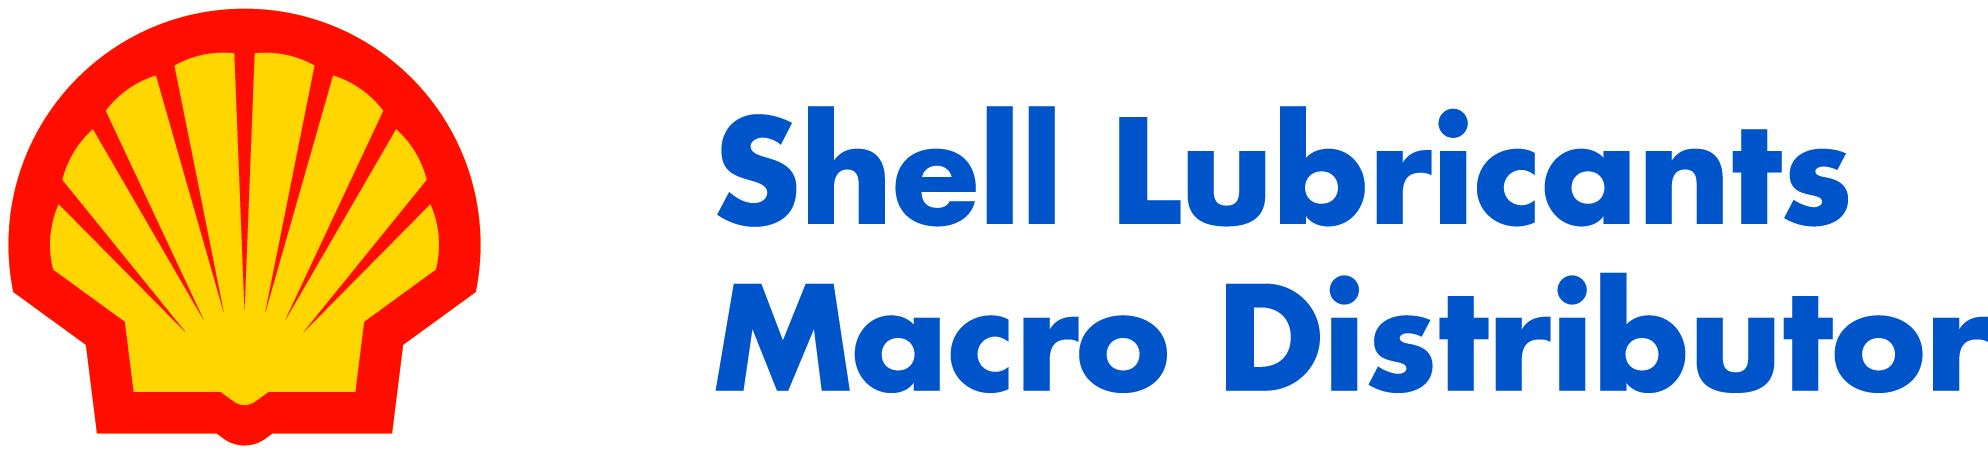 Shell macrodistributor logo